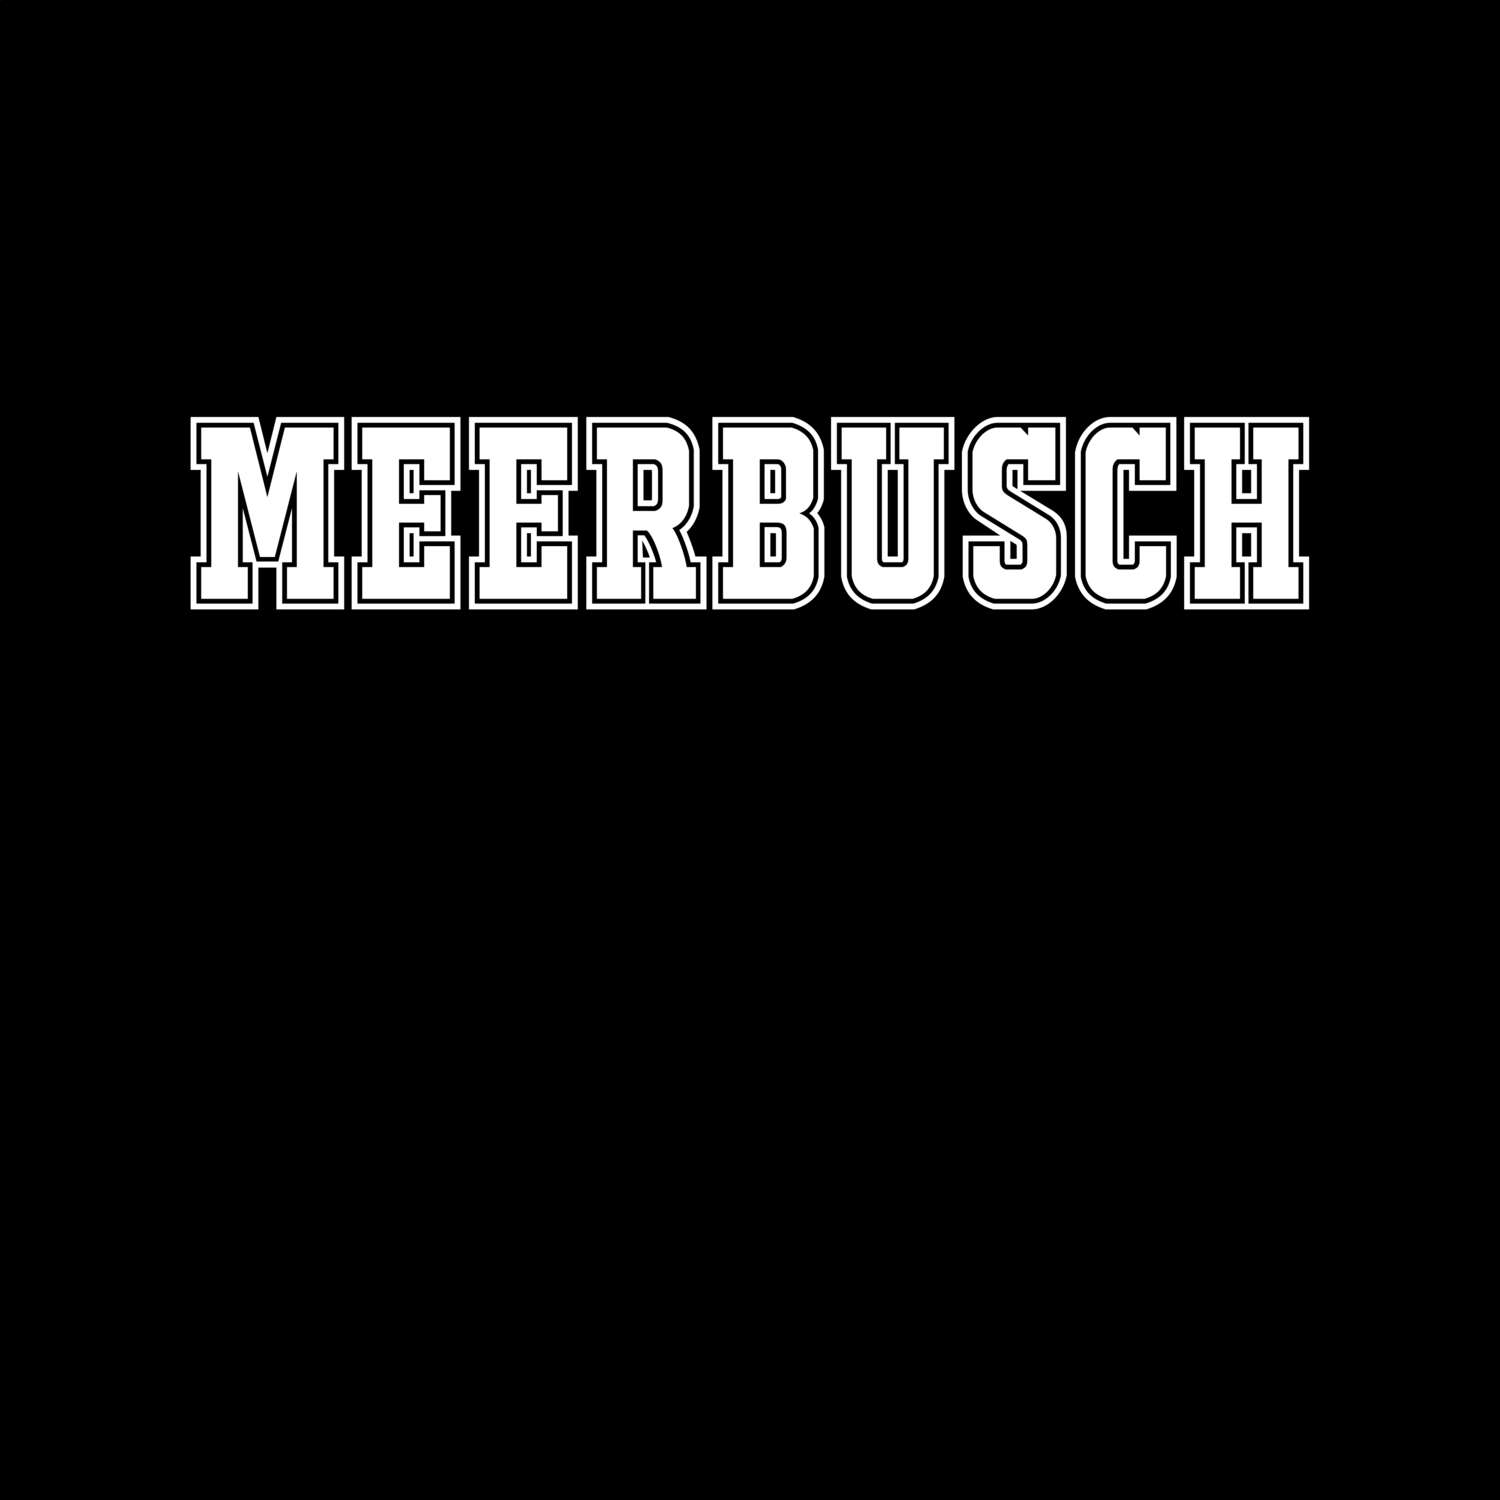 Meerbusch T-Shirt »Classic«